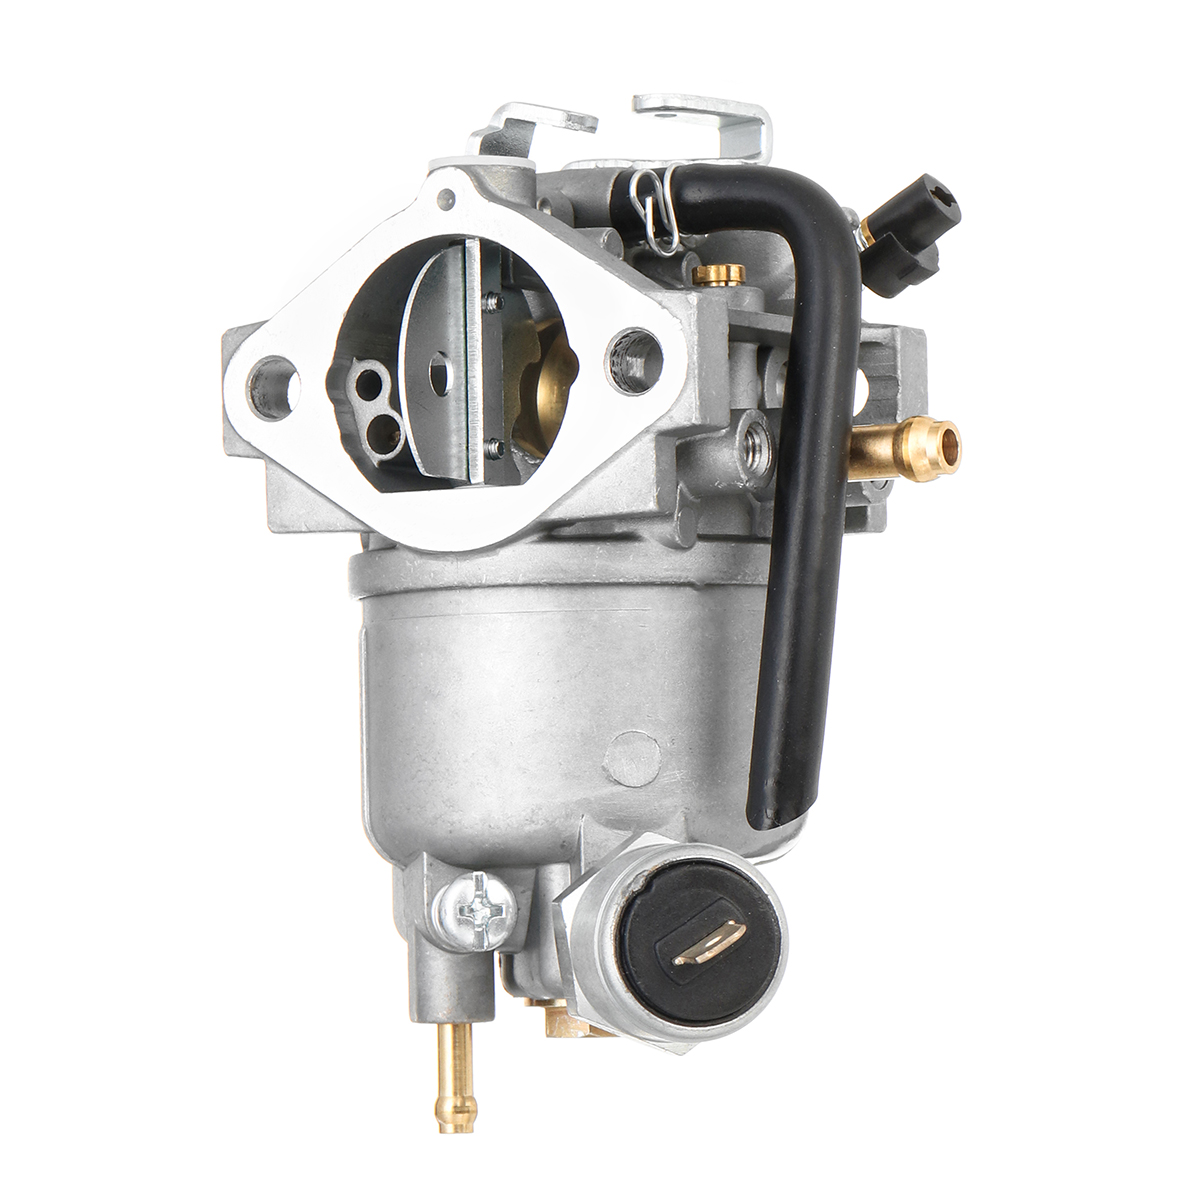 0円 【メール便送料無料対応可】 Carbpro AM128355 Carburetor Carb Replacement with Gasket Kits for John Deer 並輸51